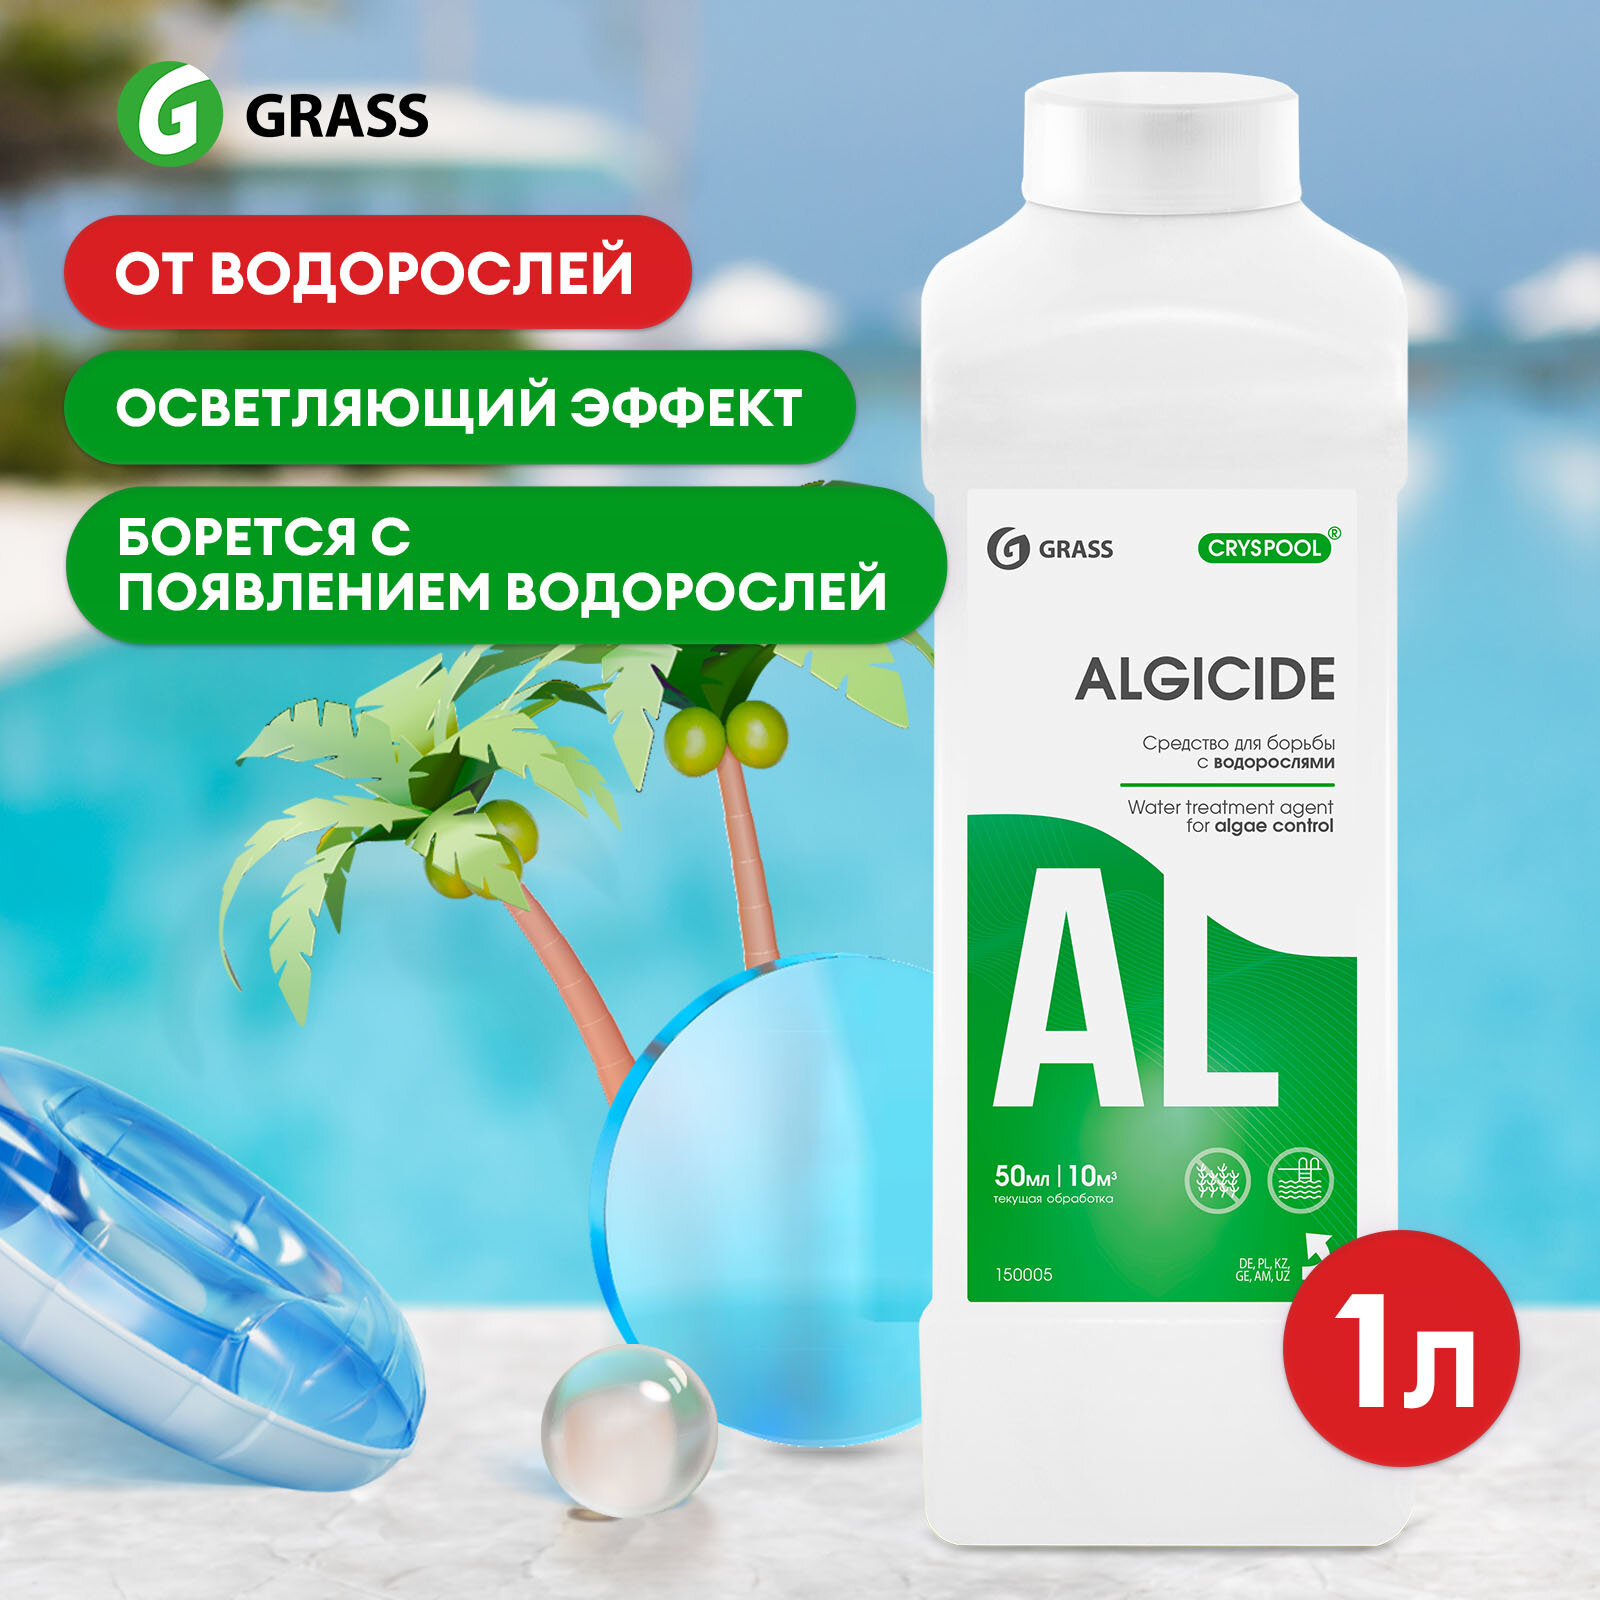 Жидкость для фонтанов Grass Cryspool algicide для борьбы с водорослями